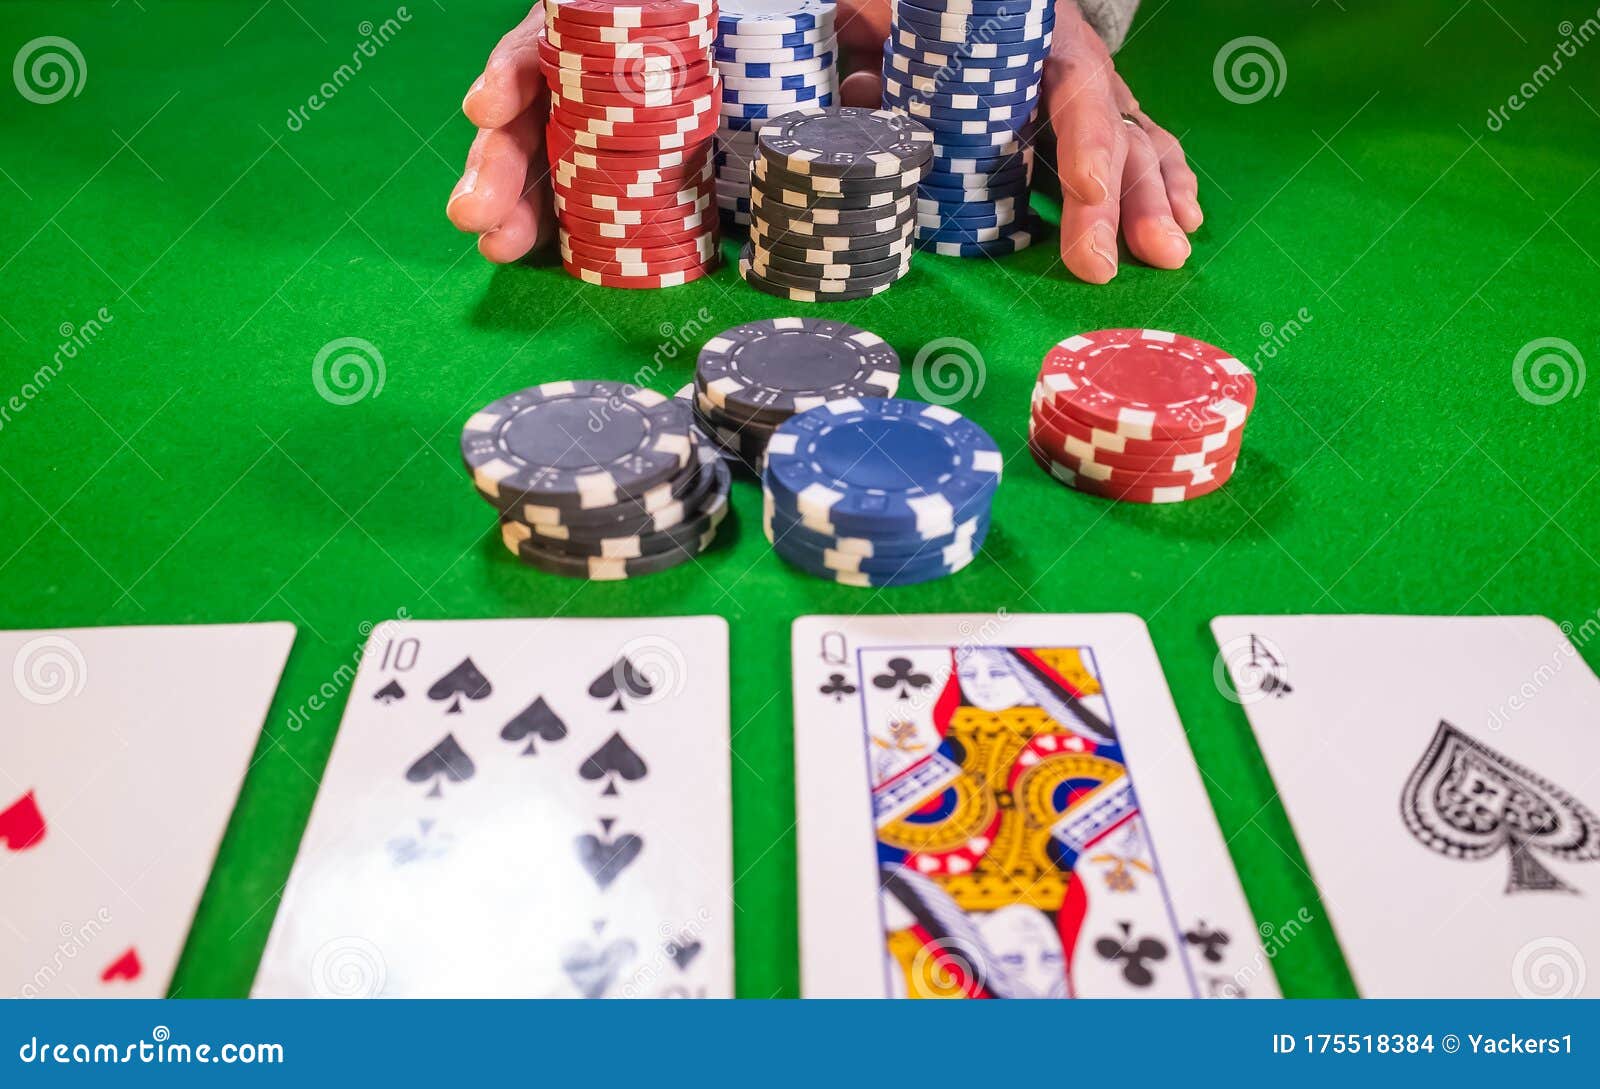 Покер ставки на спорт poker как заработать на букмекеров на